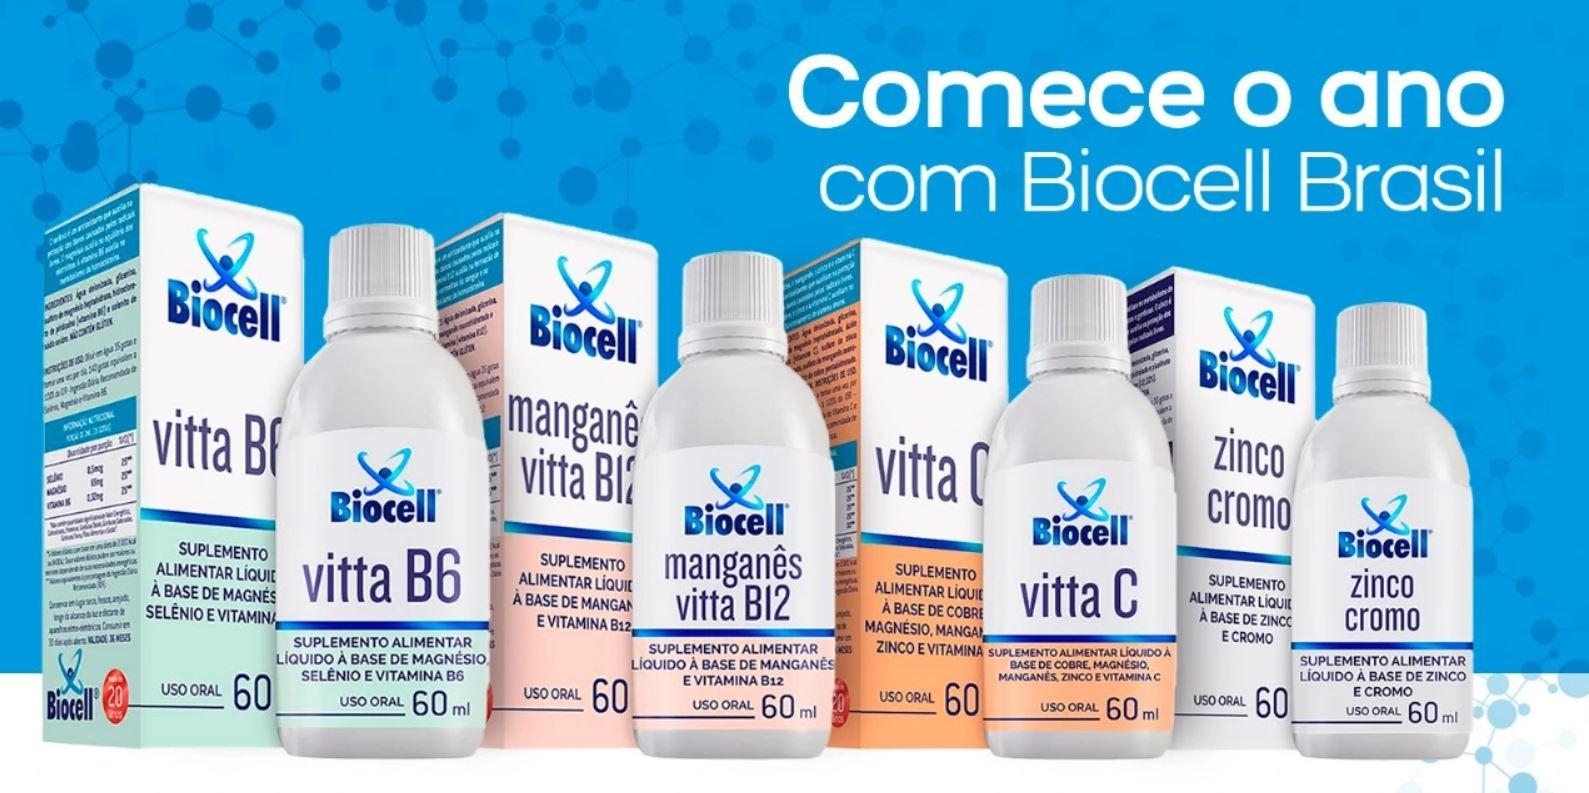 Comece o ano com Biocell Brasil